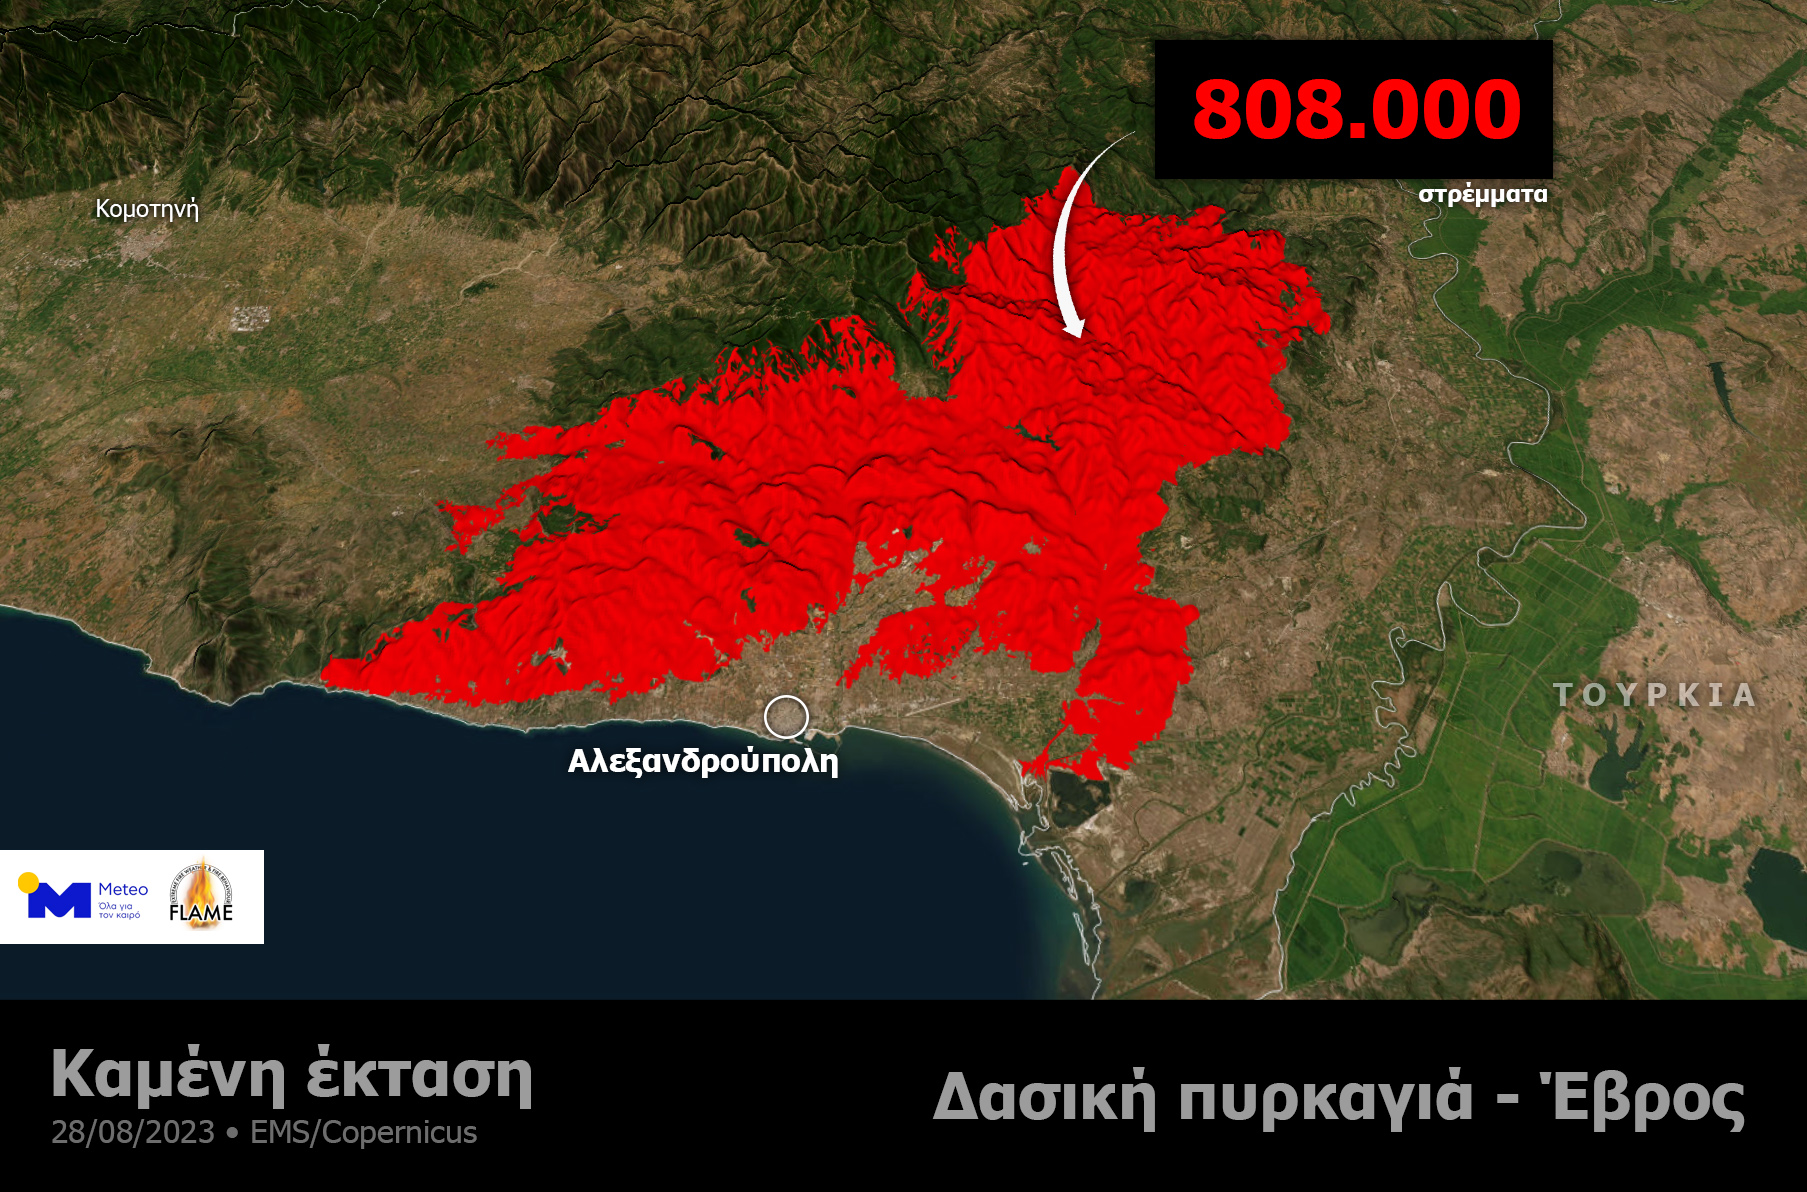 Πυρκαγιά στον Εβρο: Νέα δορυφορική εικόνα της καταστροφής – Πάνω από 808.000 τα καμένα στρέμματα-1